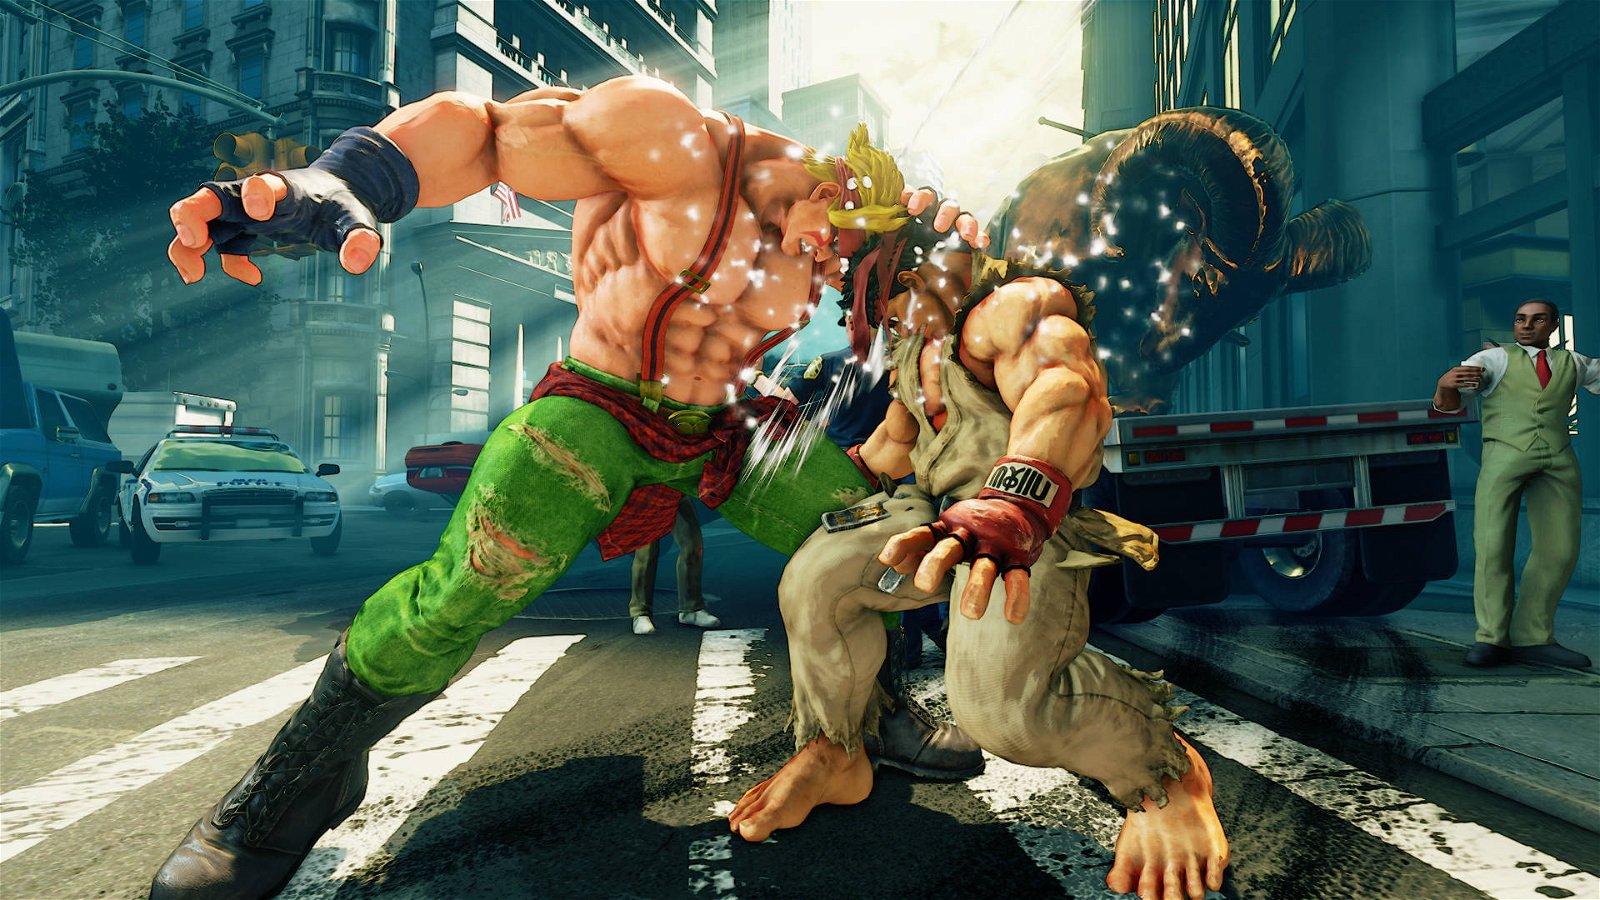 Immagine di Street Fighter V giocabile gratuitamente su Steam fino al 26 novembre